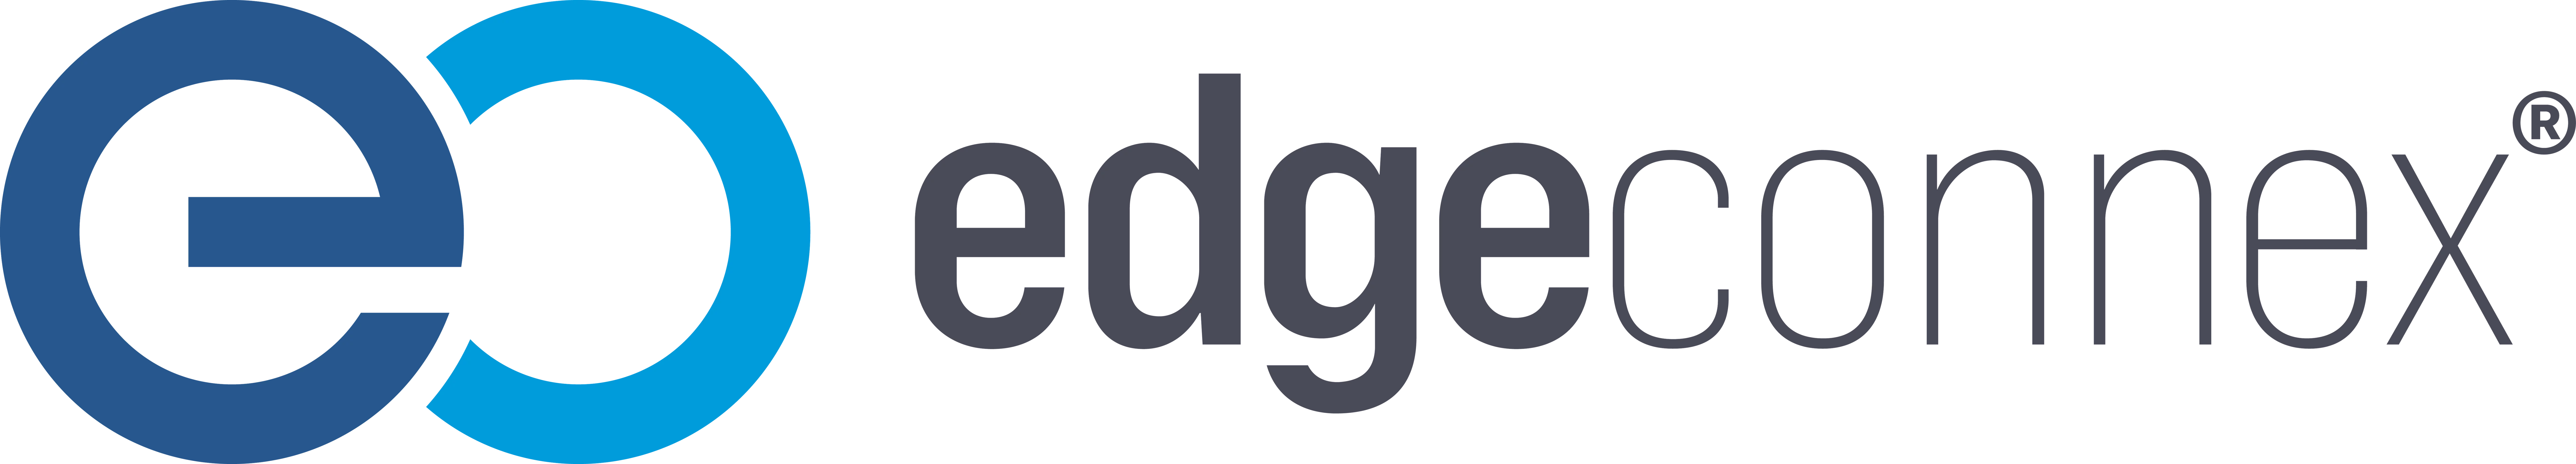 EdgeConnex-logo